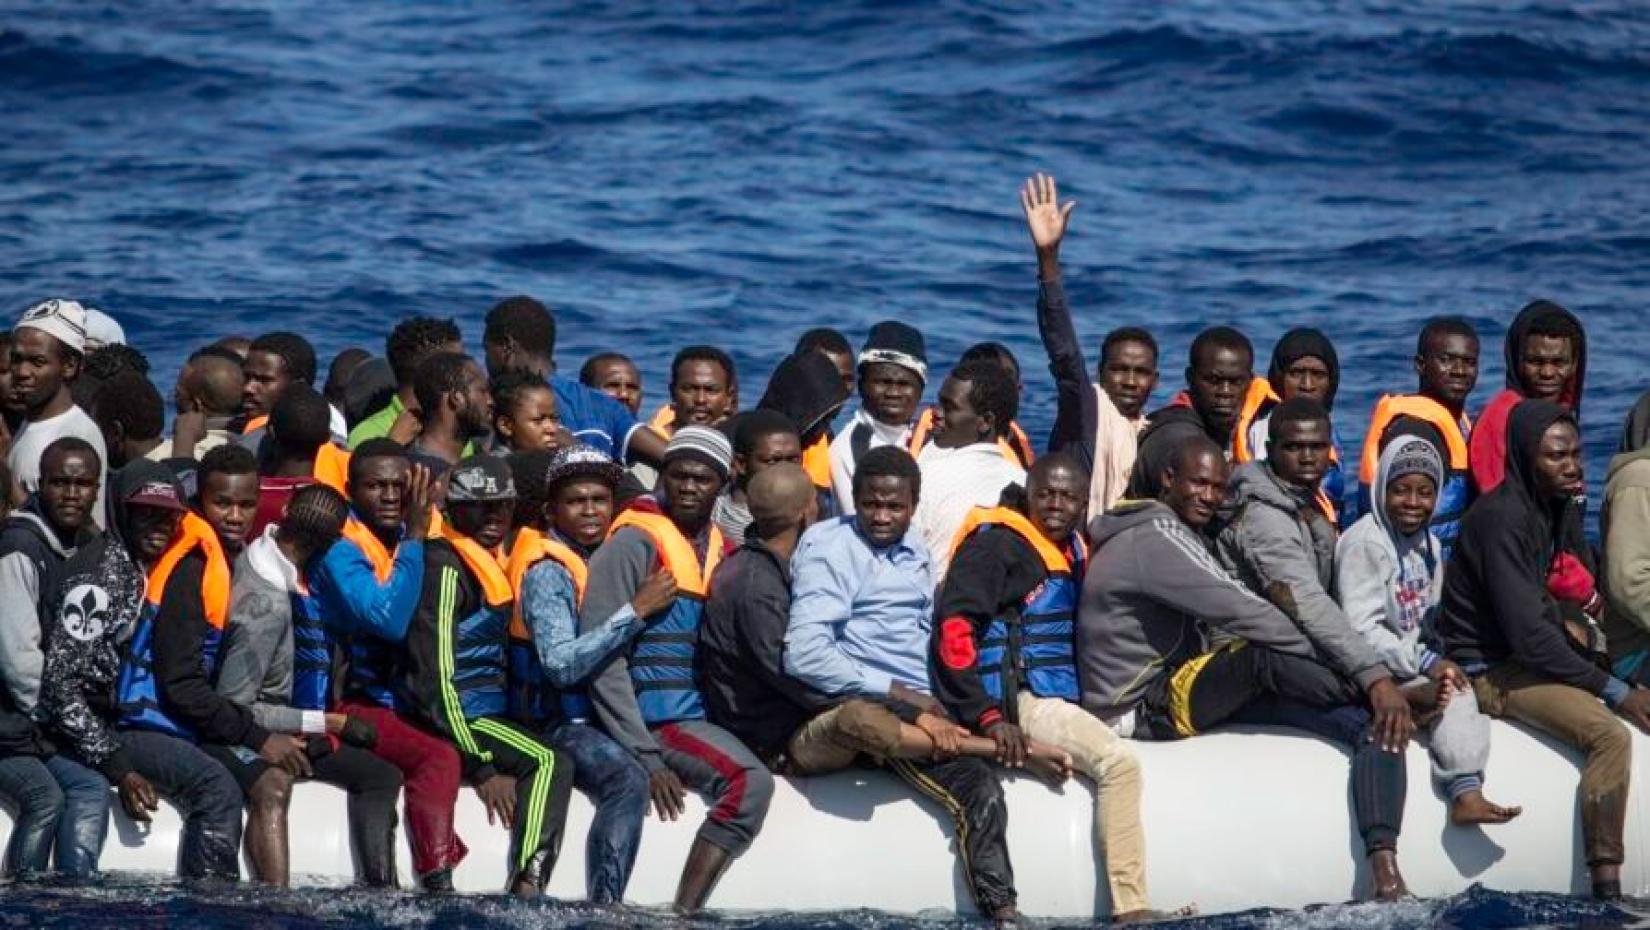 Barco com refugiados e migrantes de diversos países da África espera para ser resgatado.